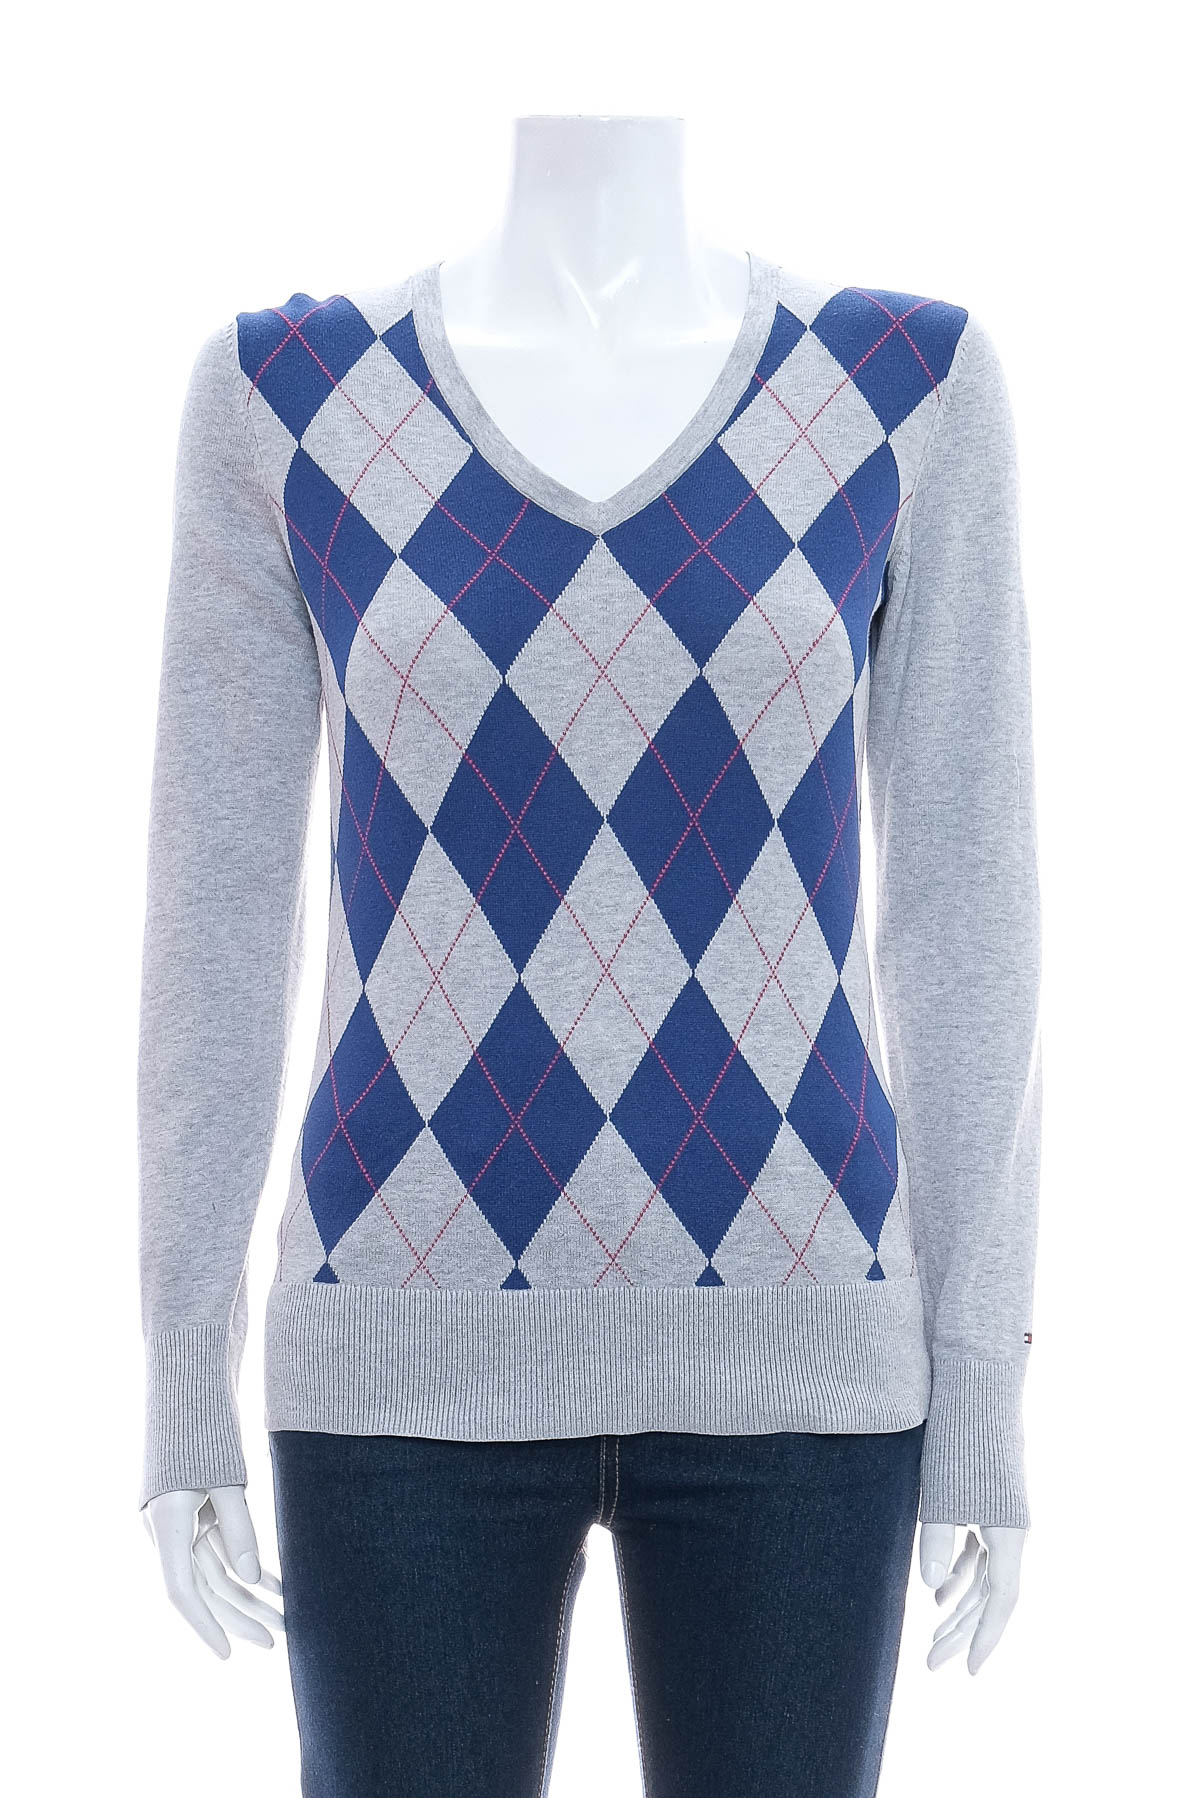 Women's sweater - TOMMY HILFIGER - 0